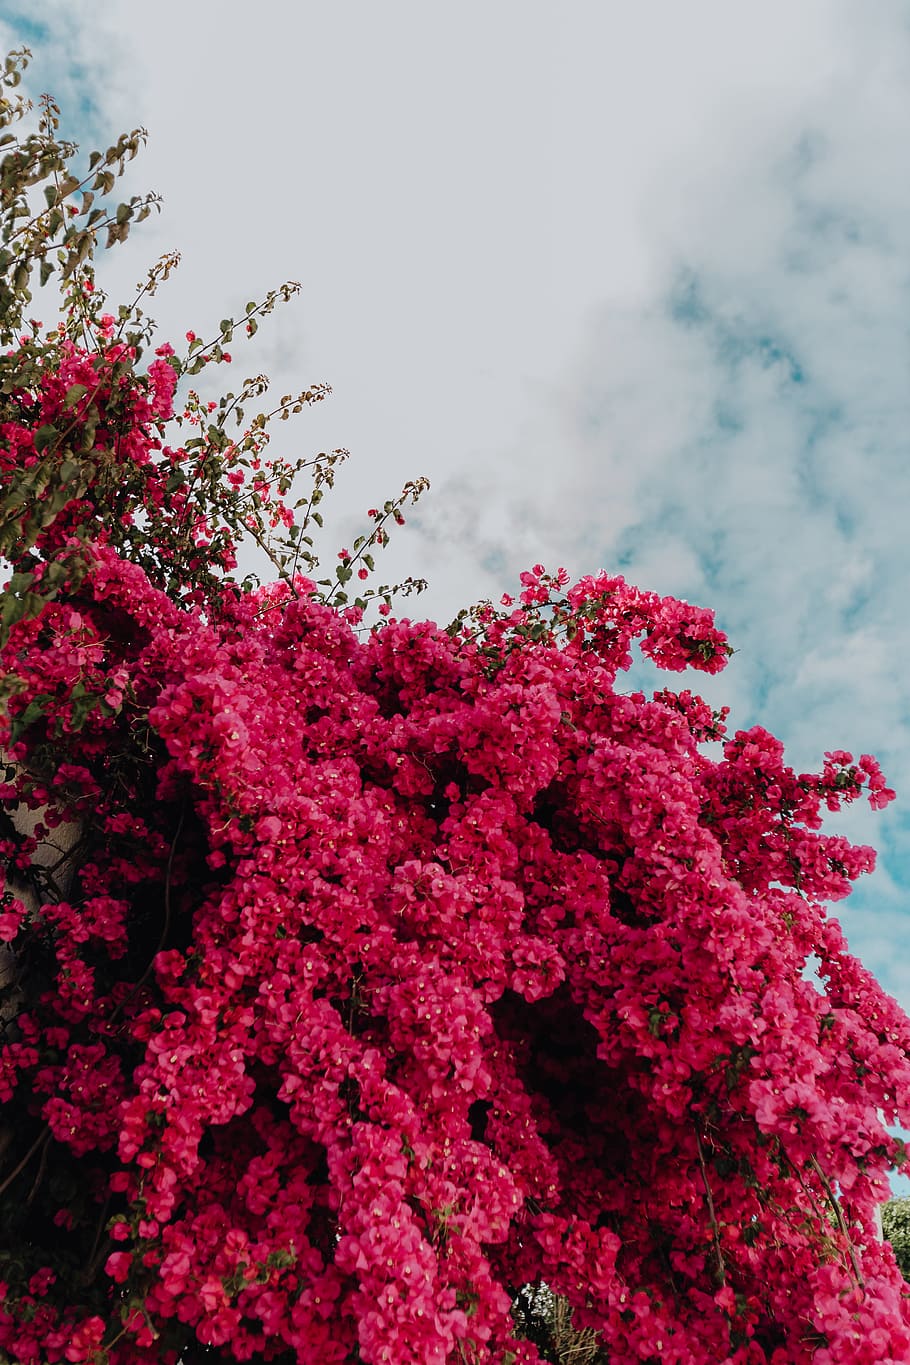 Ngắm nhìn những bông hoa bougainvillea tuyệt đẹp đầy màu sắc và nở rộ, tạo ra một cảnh tượng đầy sống động và tuyệt vời của vùng nhiệt đới. Bạn sẽ bị cuốn hút bởi vẻ đẹp của chúng và không muốn rời đi.